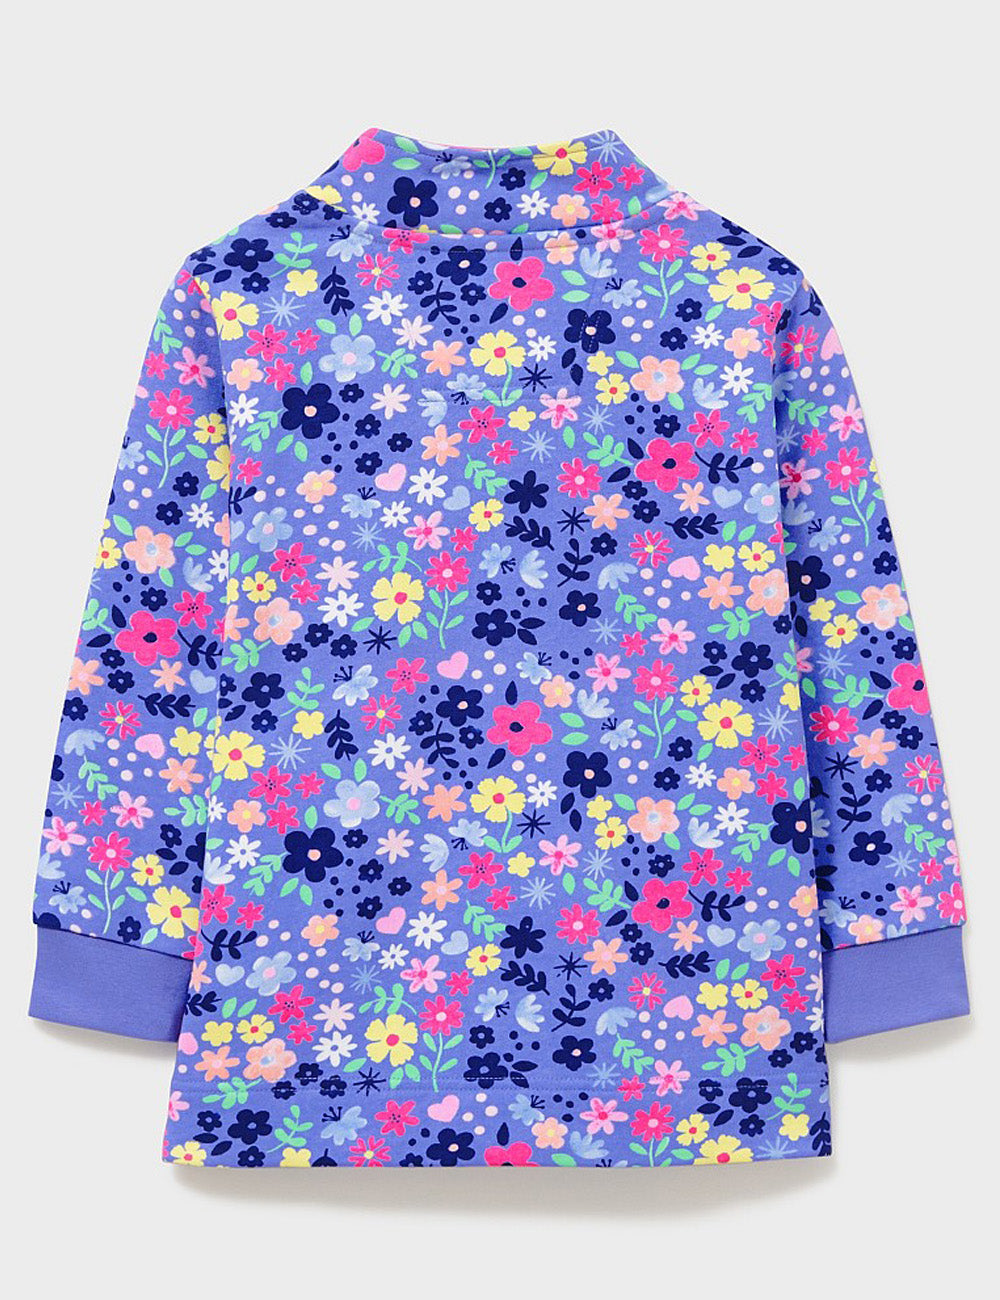 Crew Clothing Floral Print 1/2 Zip Sweatshirt - Blue Multi